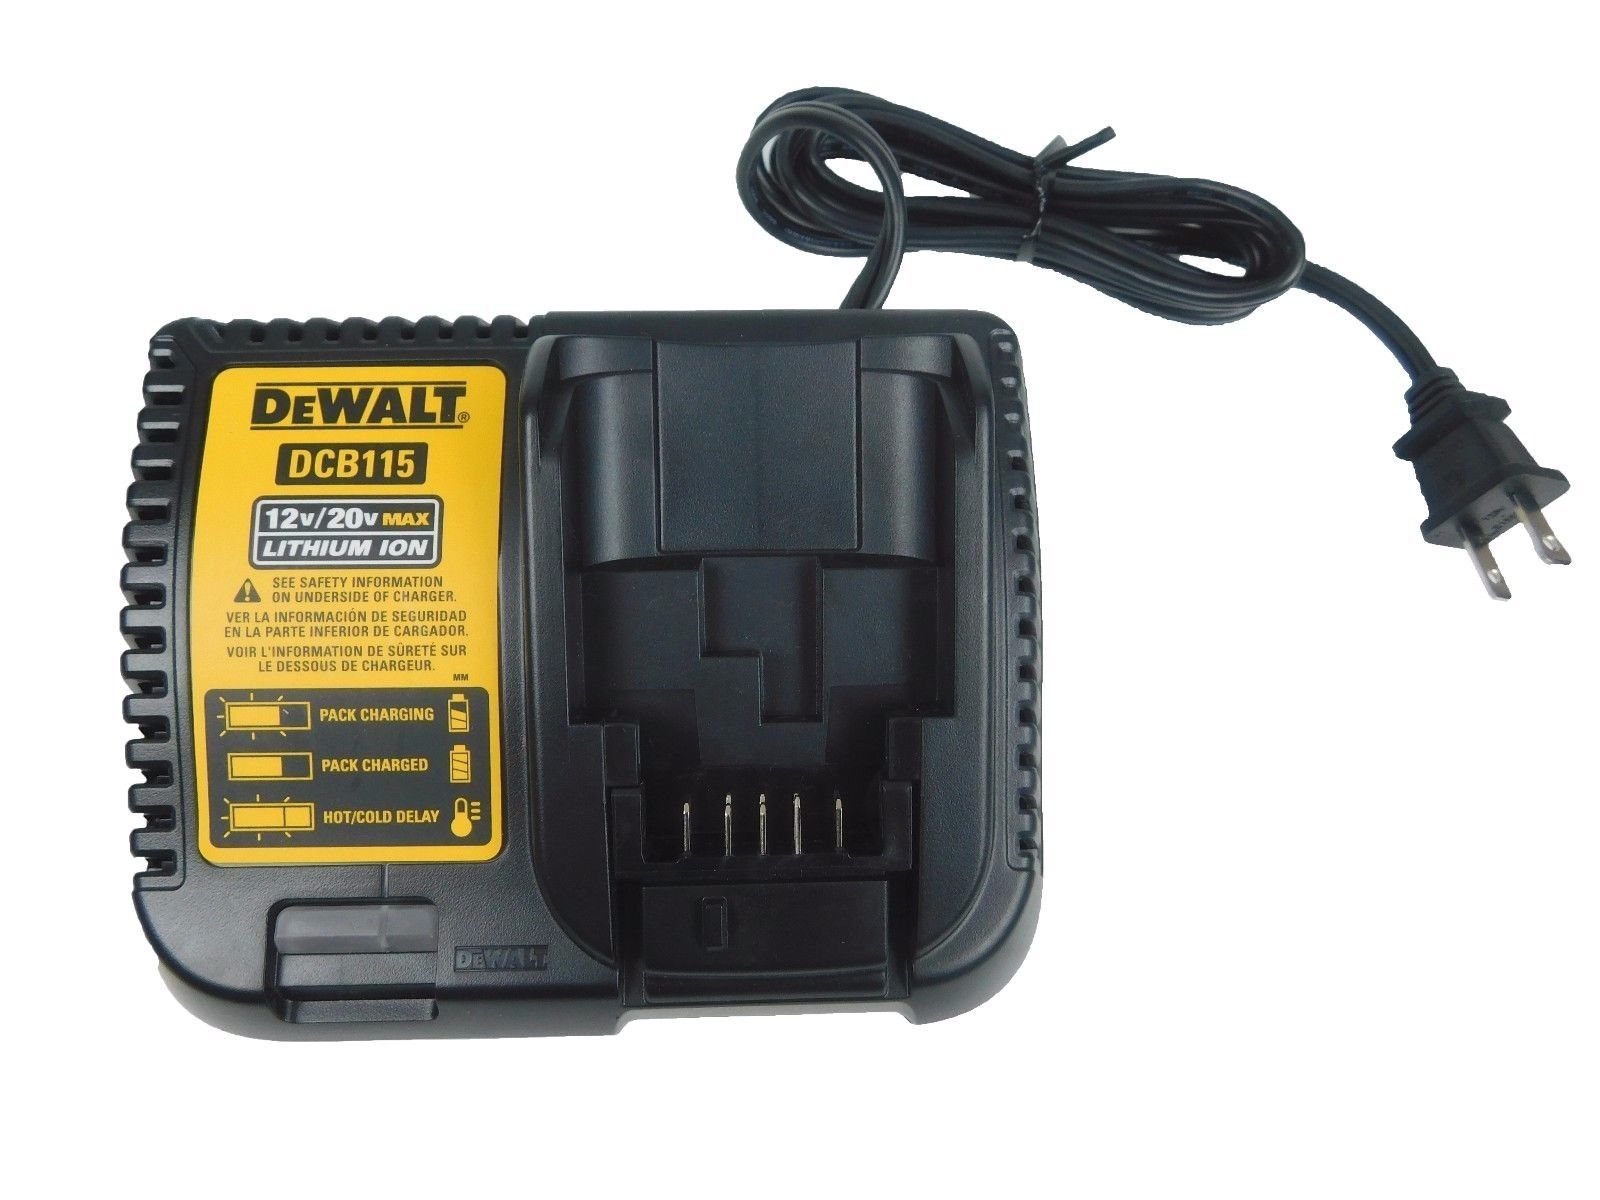 DeWalt-DCB115-MAX-Lithium-Ion-Battery-Charger-12V-20V-image-1